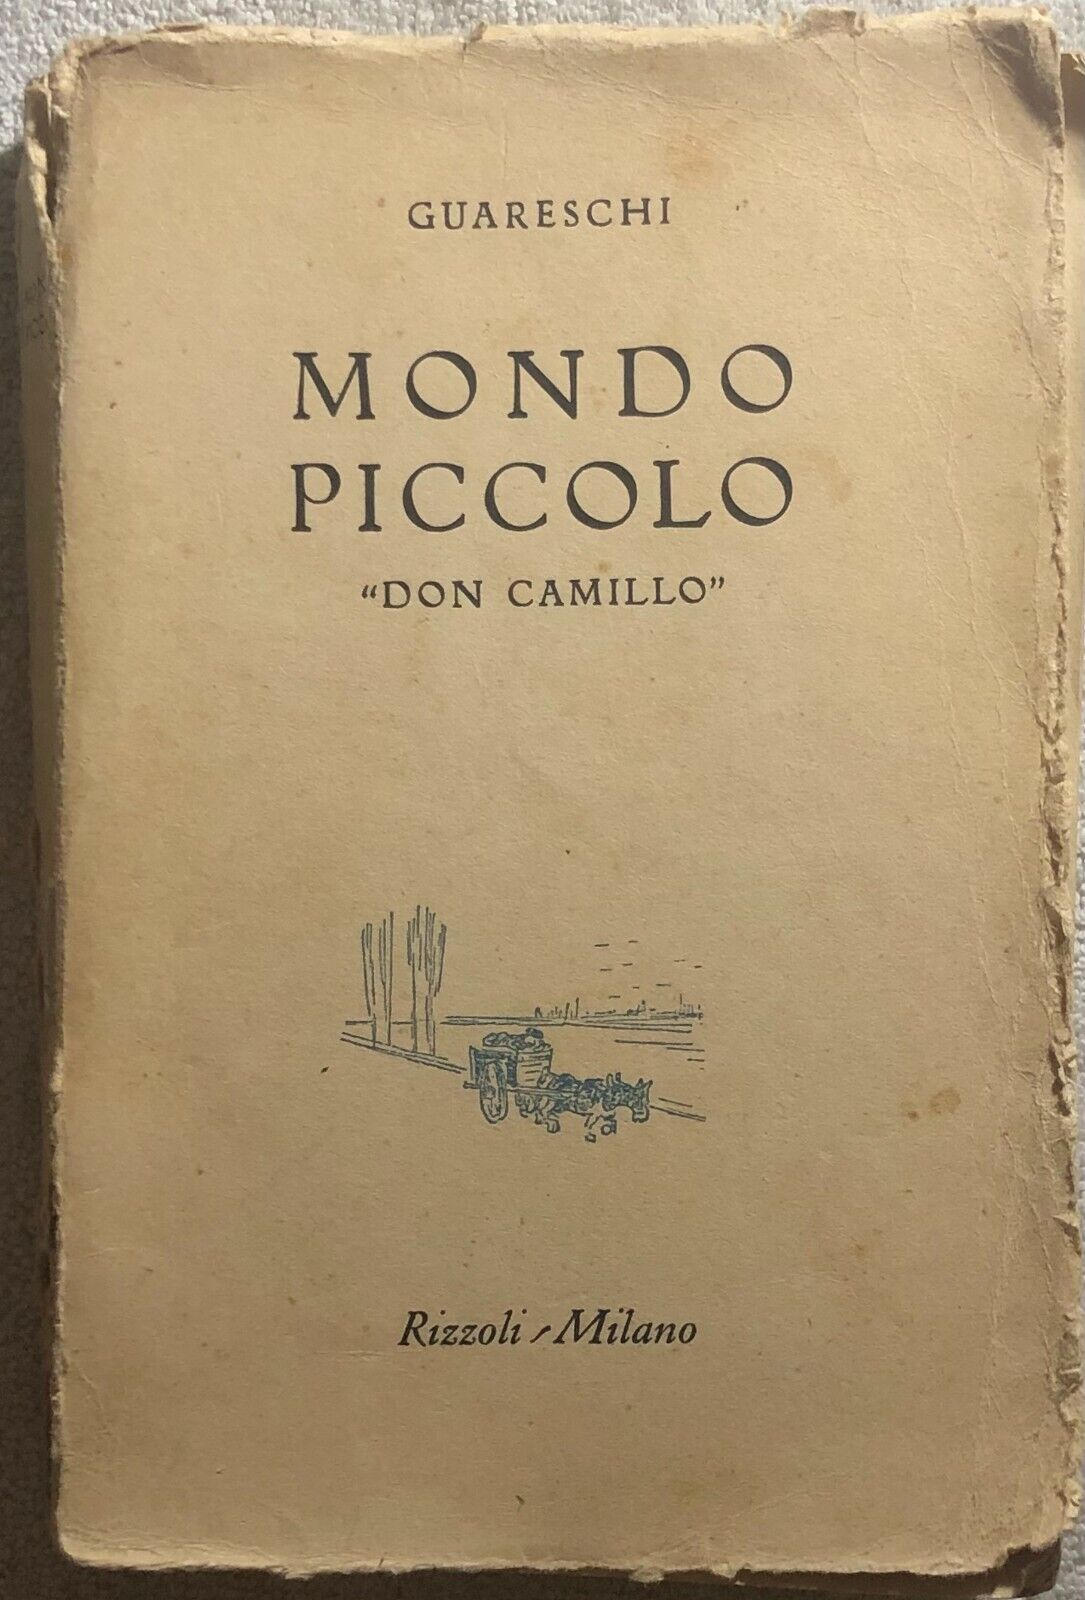 Mondo piccolo Don Camillo di Guareschi,  1952,  Rizzoli Milano